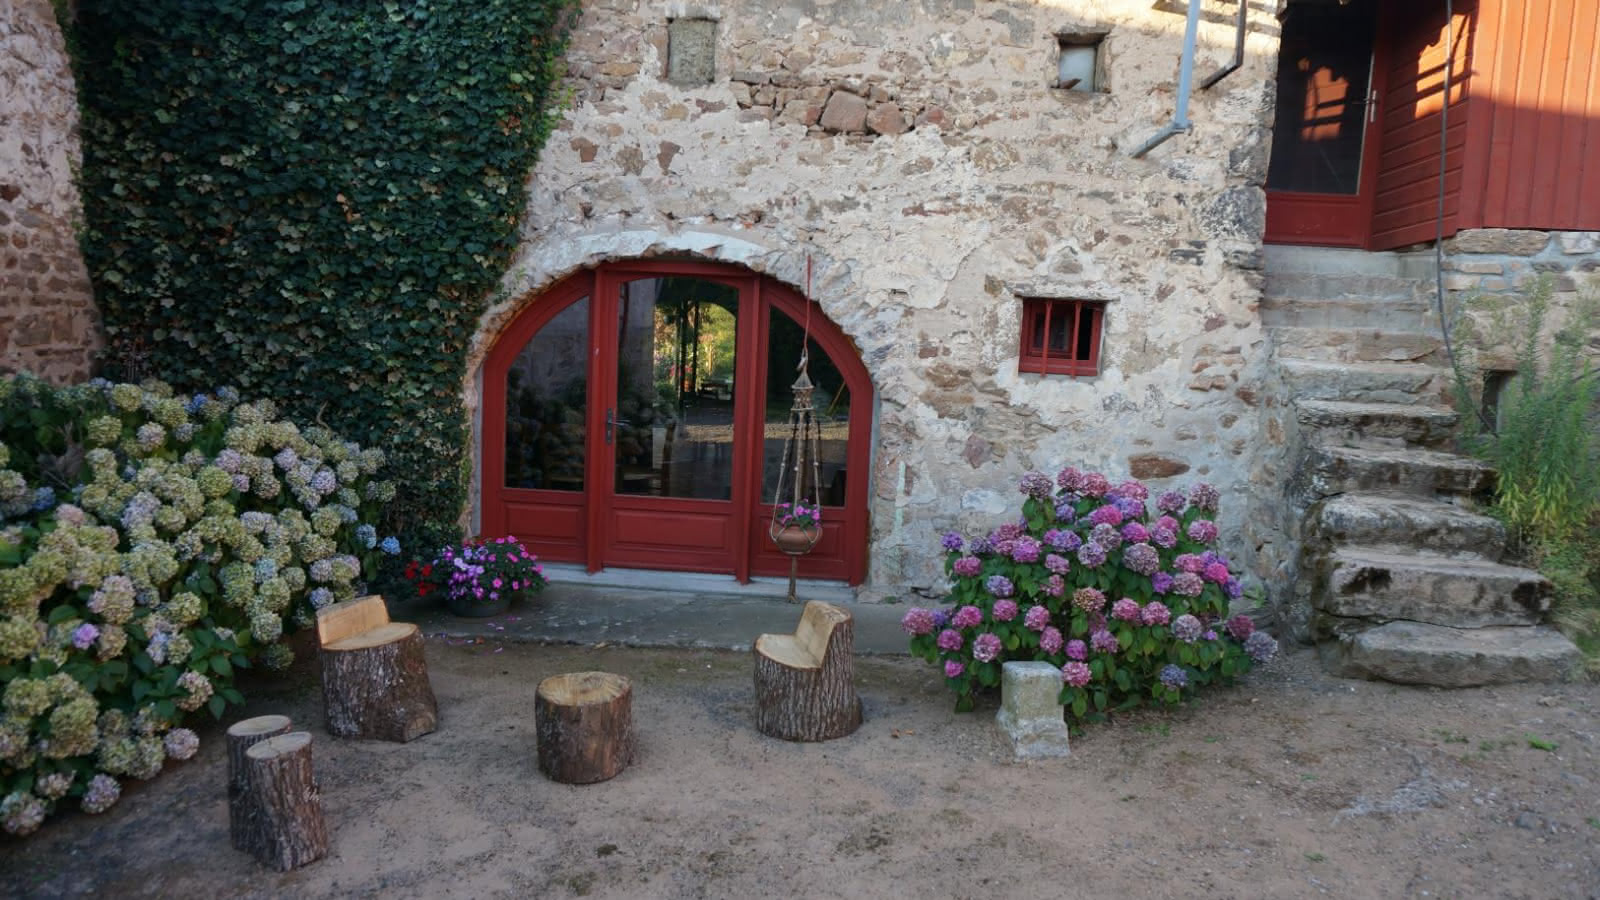 Chambres d'hôtes de 'La Ferme du Thiollet' à MONTROMANT (Rhône-Monts du Lyonnais).
